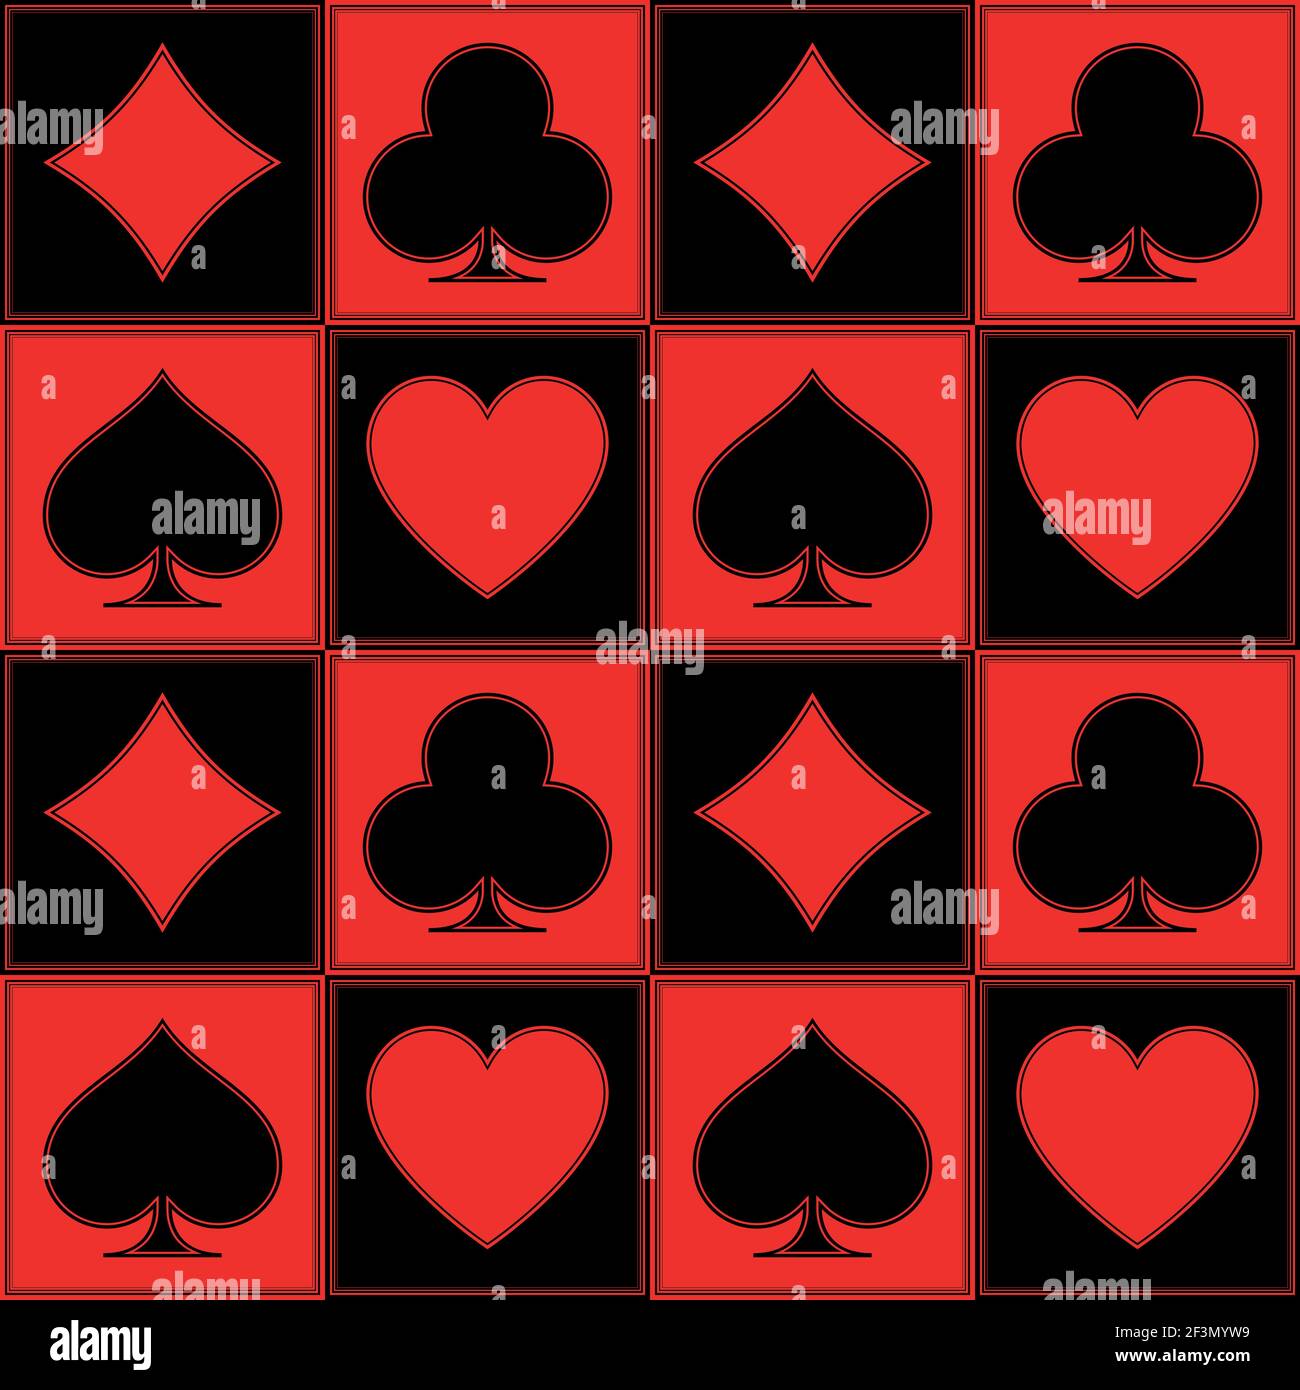 Dessin vectoriel d'un motif de poker, avec les symboles du trèfle, de l'as, des diamants et du coeur, en rouge et noir Illustration de Vecteur